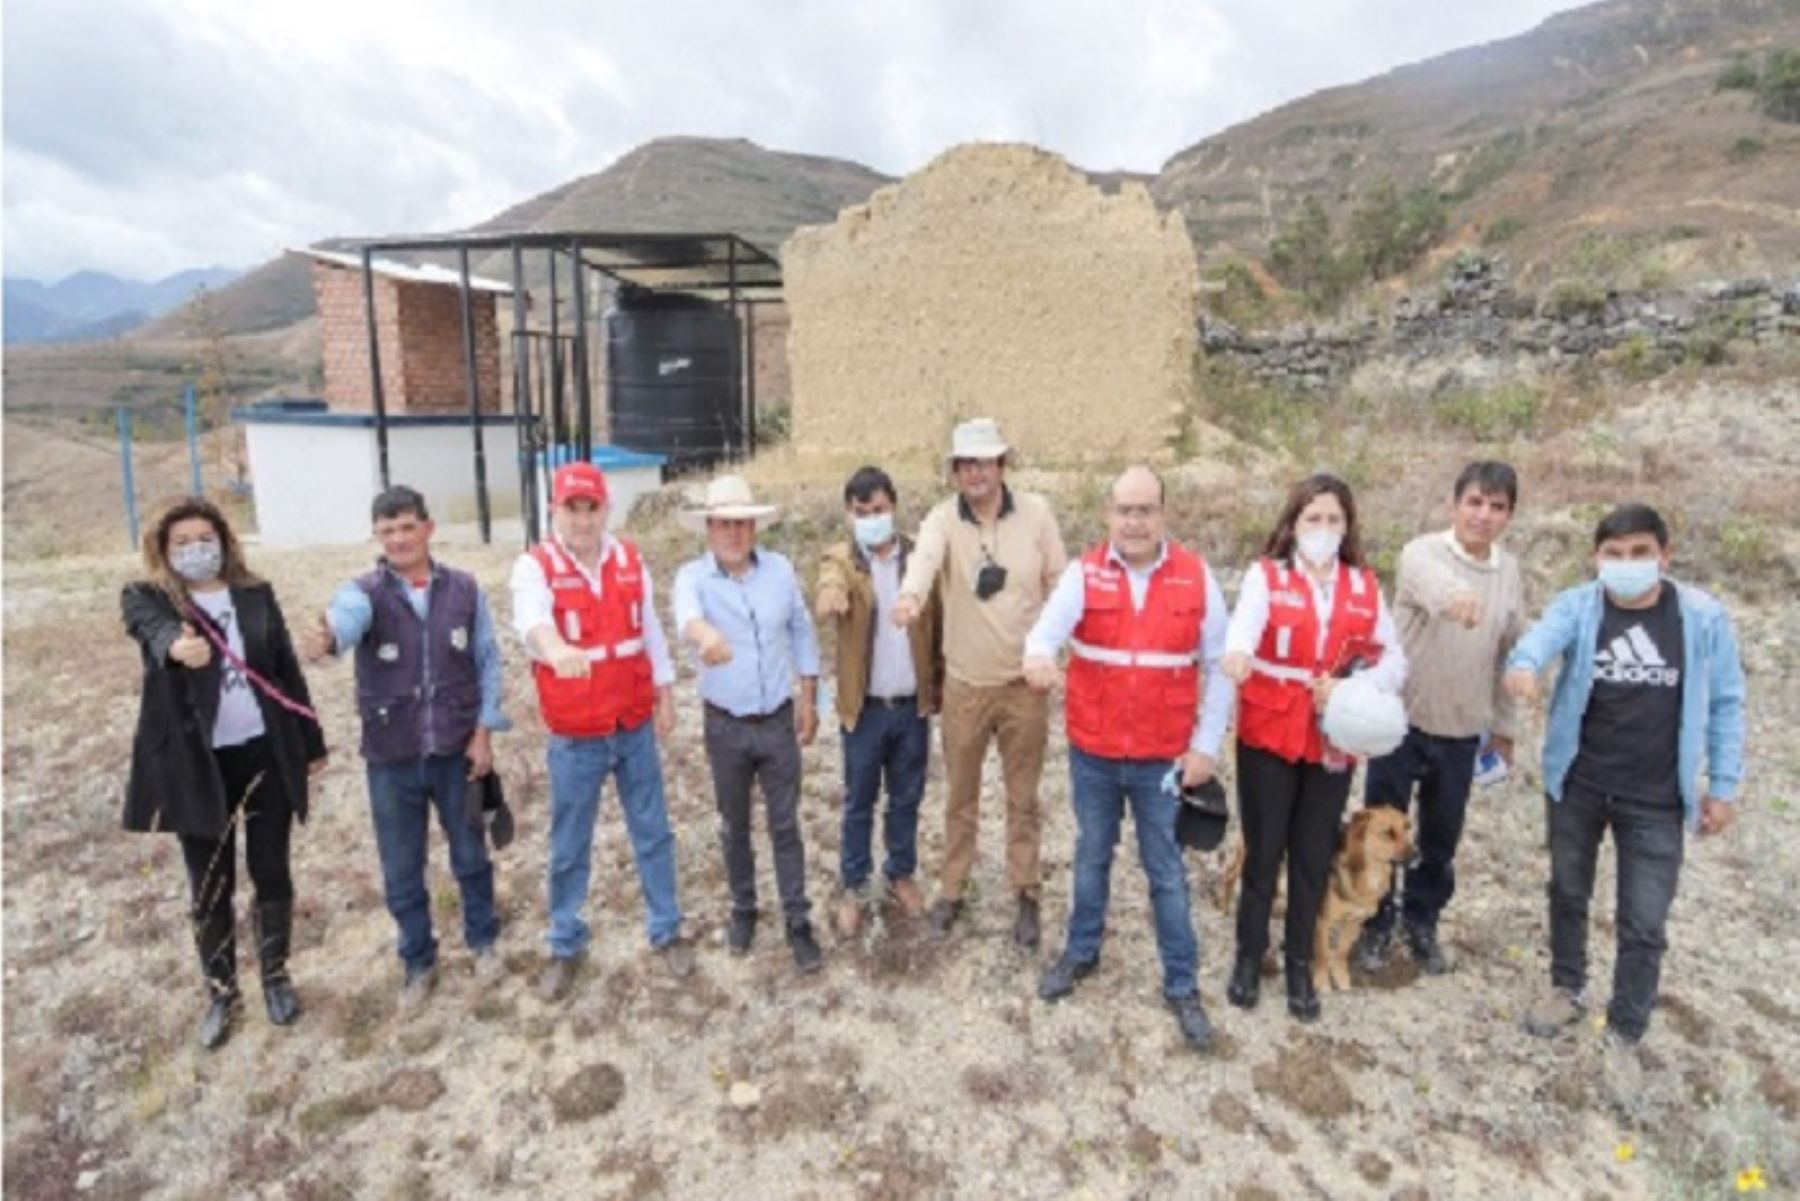 La inversión contribuyó a impulsar la economía del distrito de Ichocán, región Cajamarca, al generar más de 300 puestos de trabajo.